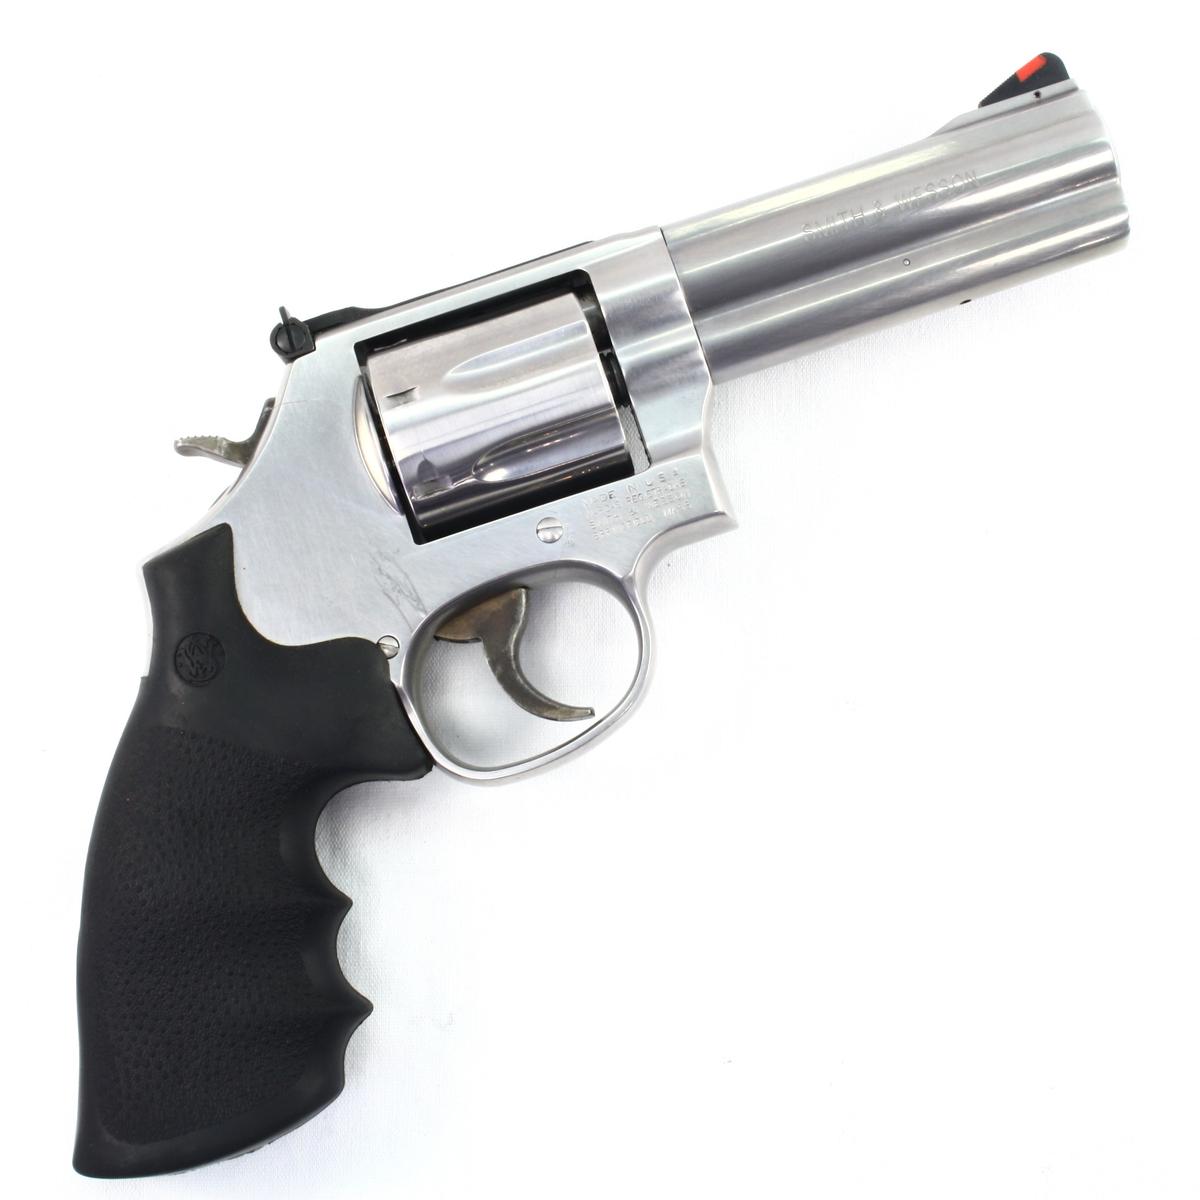 Estate Smith & Wesson 686-6 Plus revolver, .357 Magnum cal